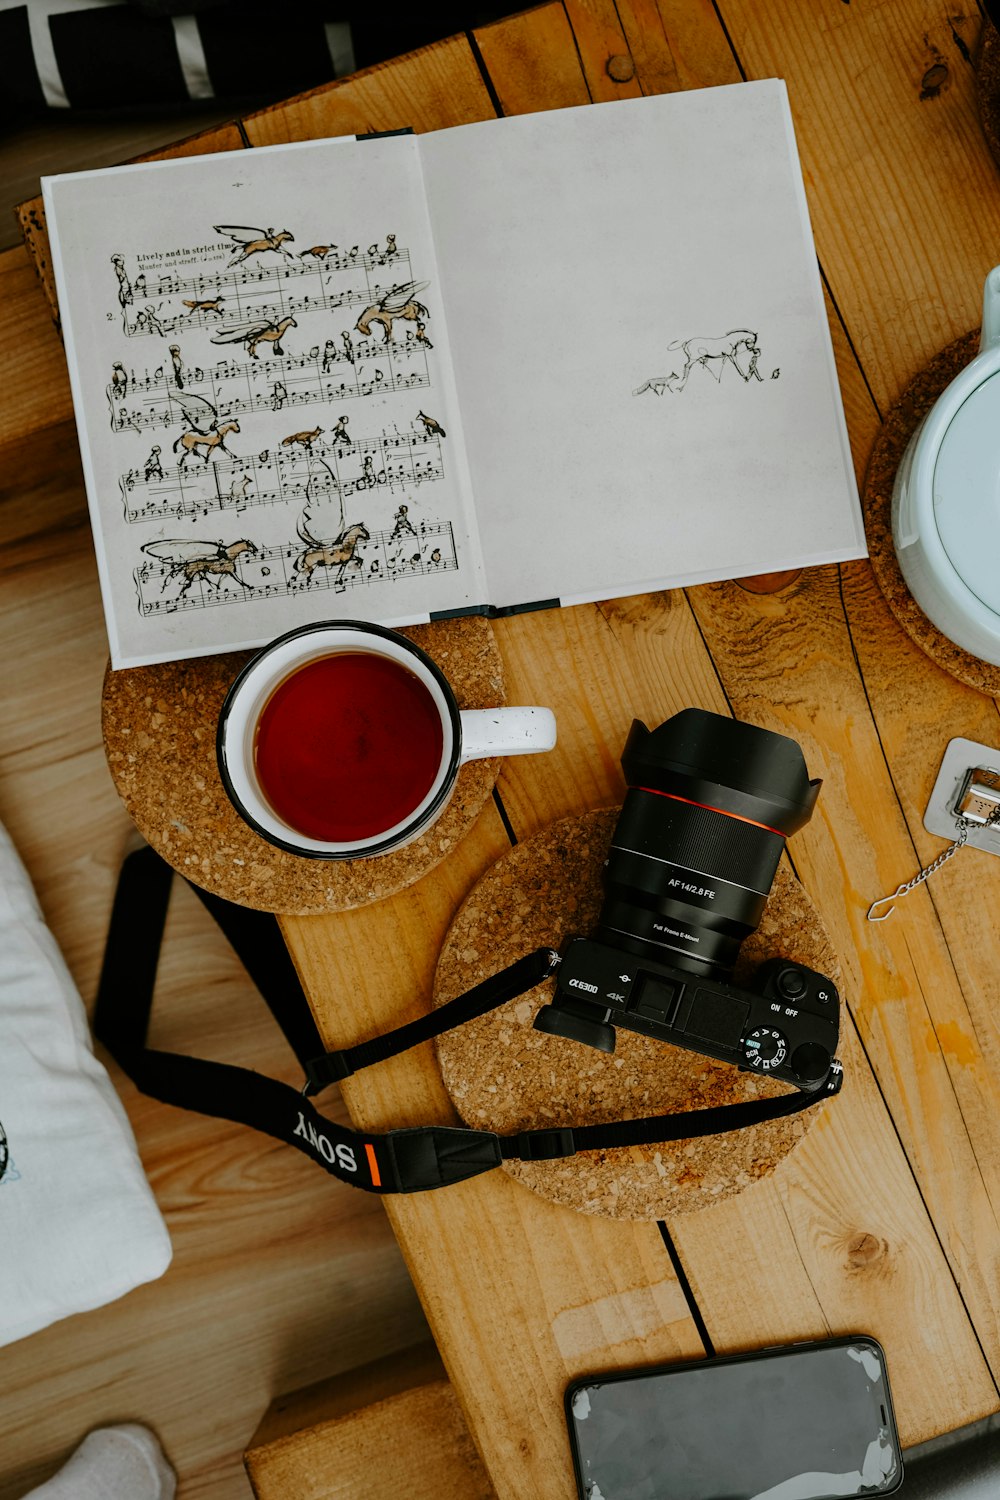 black dslr camera beside white ceramic mug on brown wooden table